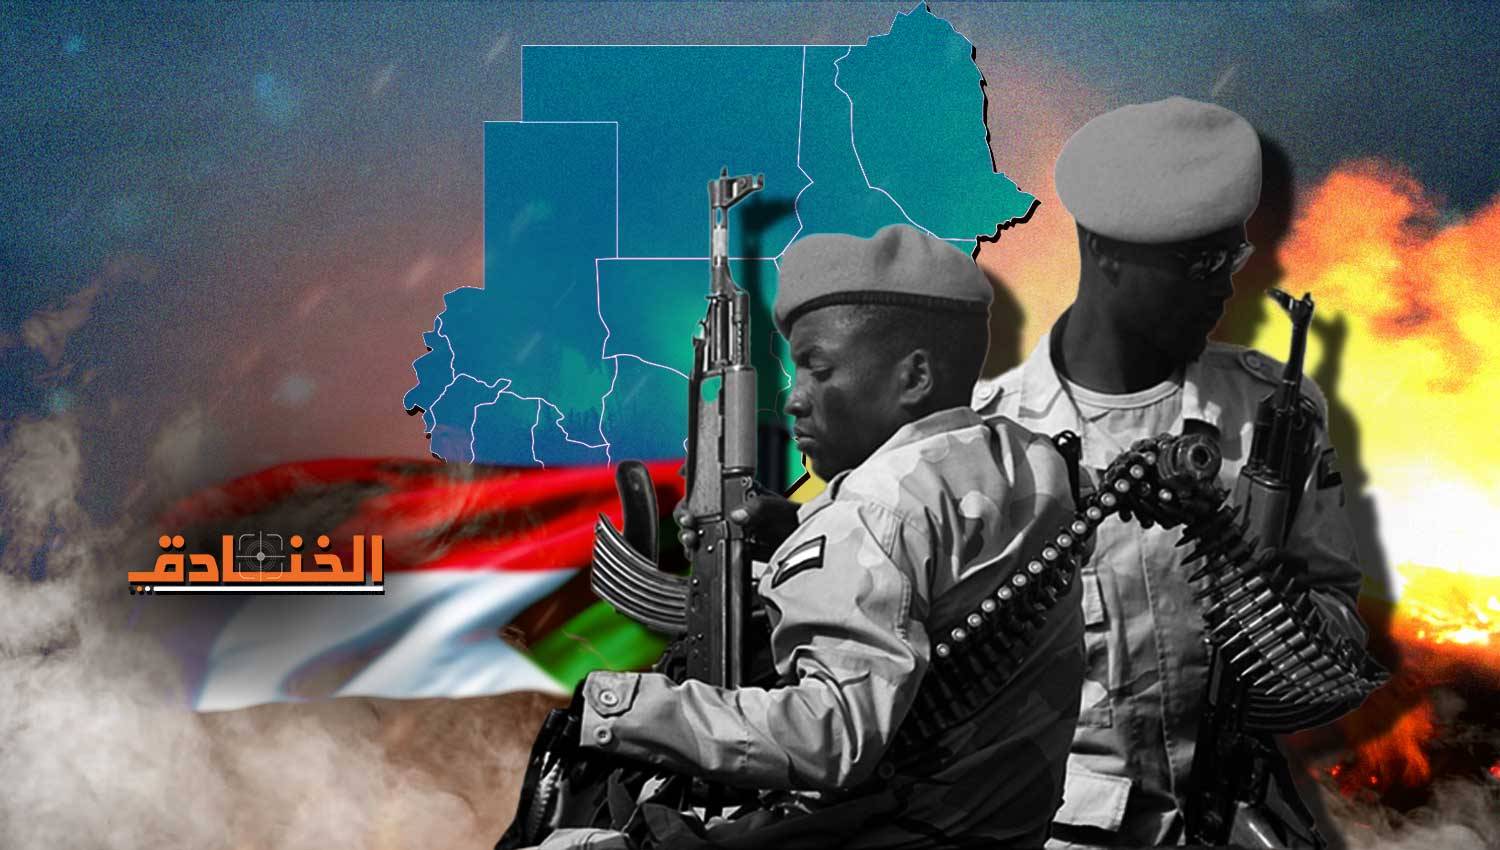 انزلاق السودان إلى الدمار غير مسبوق